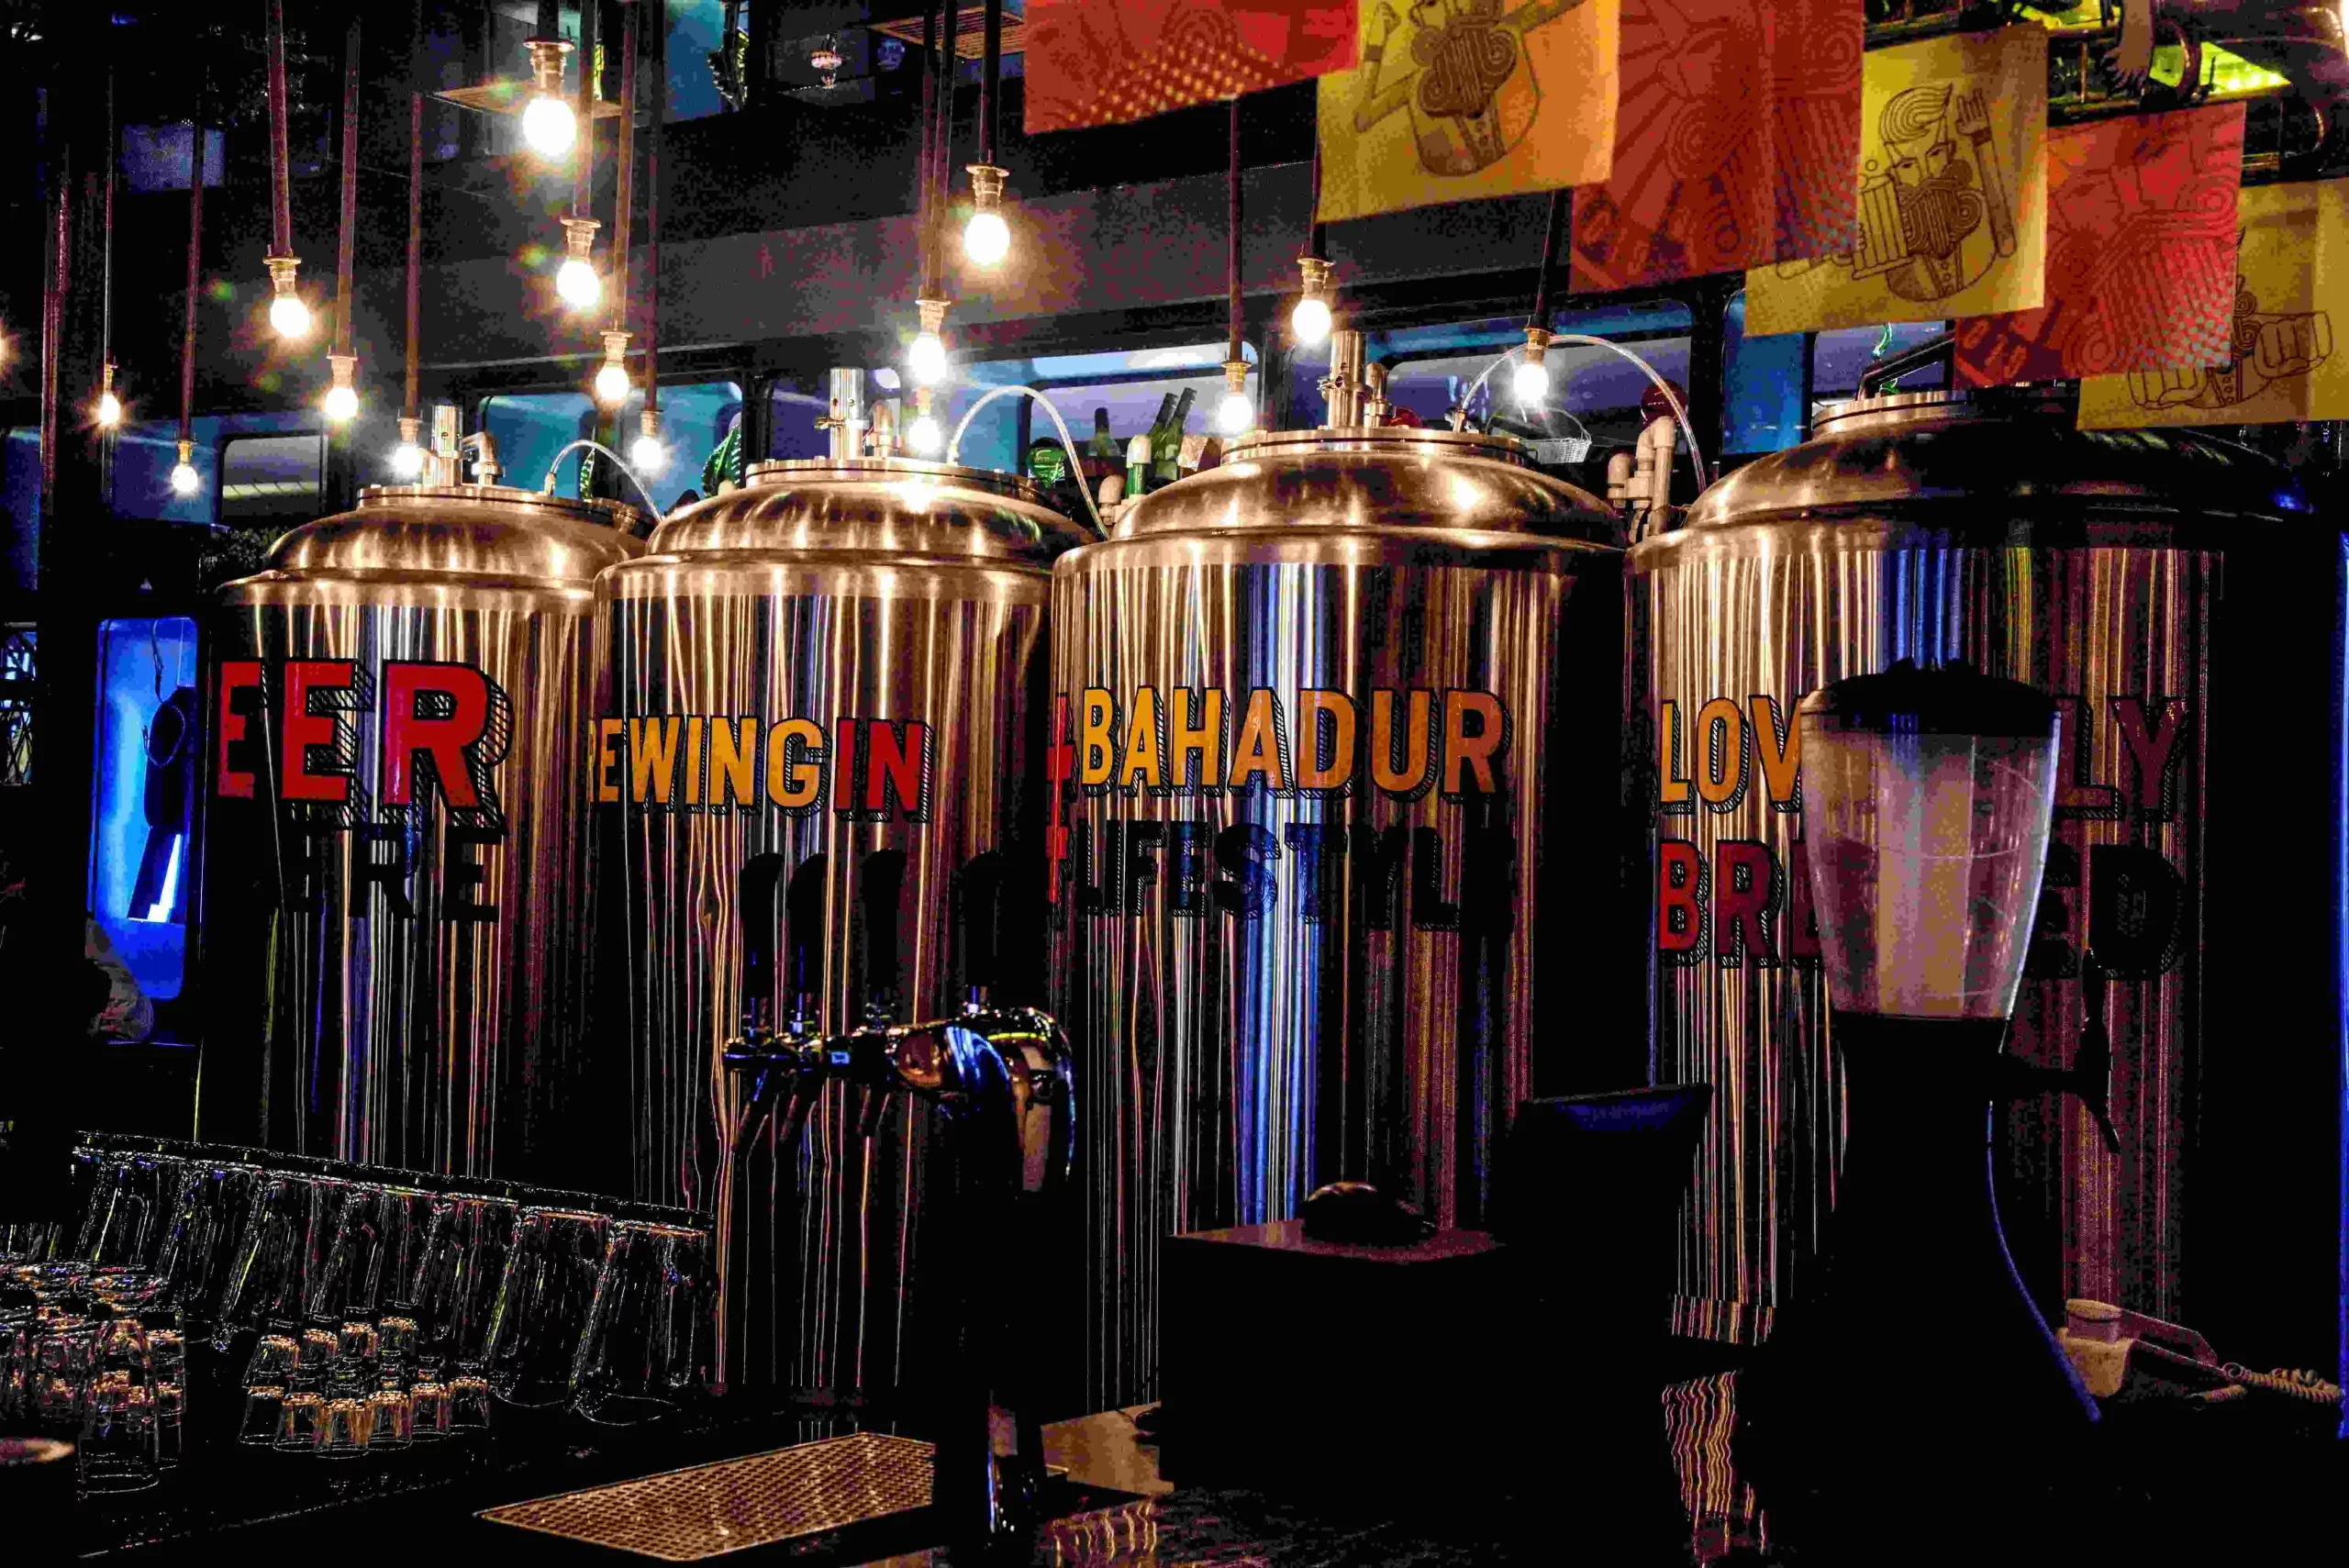 A row of beer kegs in a bar.